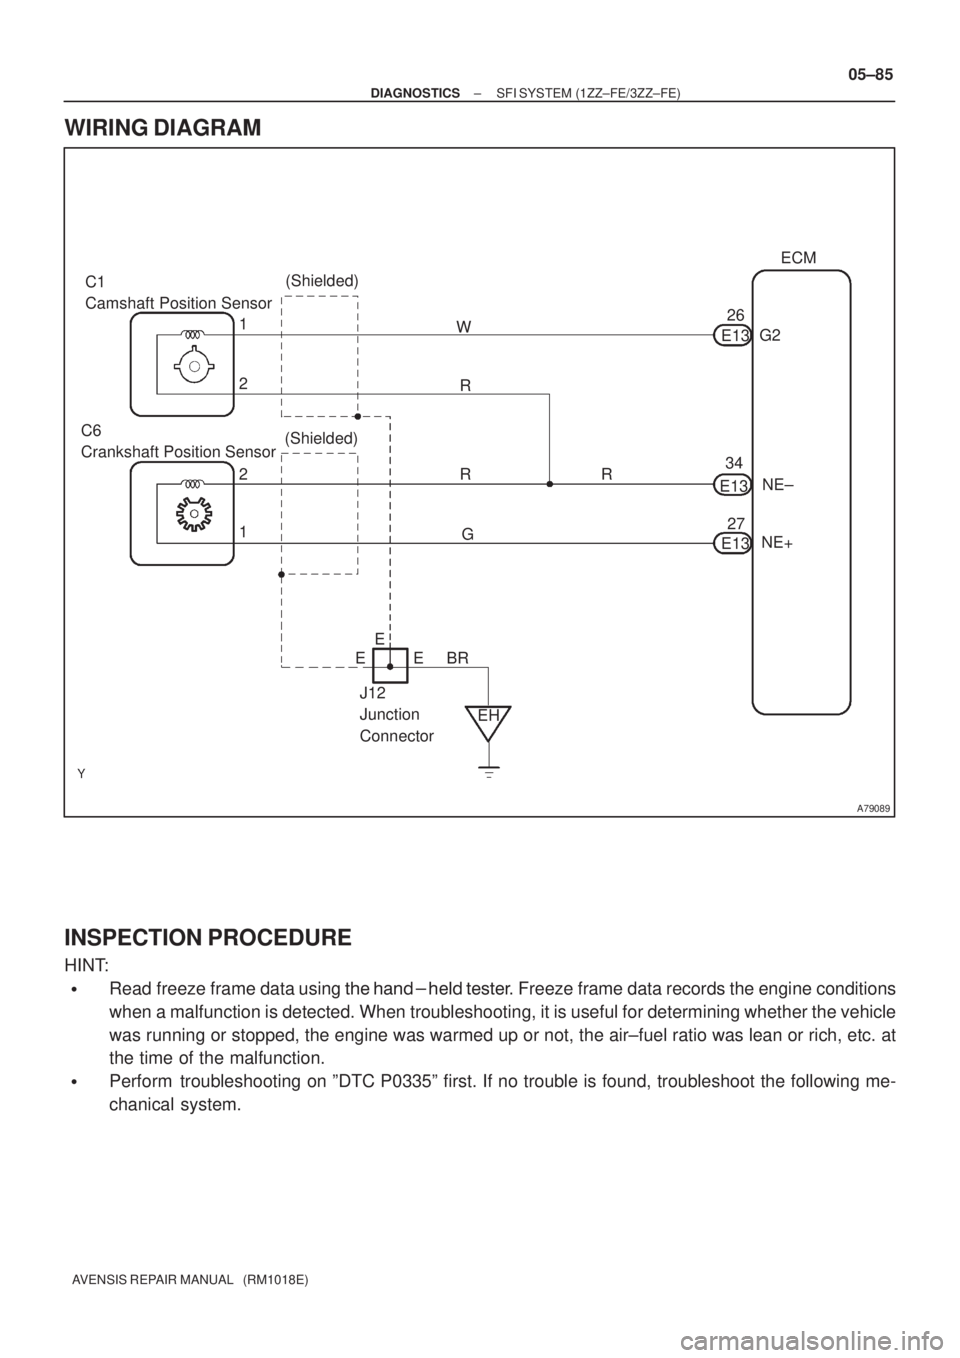 TOYOTA AVENSIS 2005  Service Repair Manual A79089
C1
Camshaft Position Sensor(Shielded)
1 2ECM
(Shielded) 1
2
EHR
NE+NE± G2 W
G C6
Crankshaft Position Sensor
R RE13
E13
E1326
34
27
BR E
J12
Junction
ConnectorE E
± DIAGNOSTICSSFI SYSTEM (1ZZ�